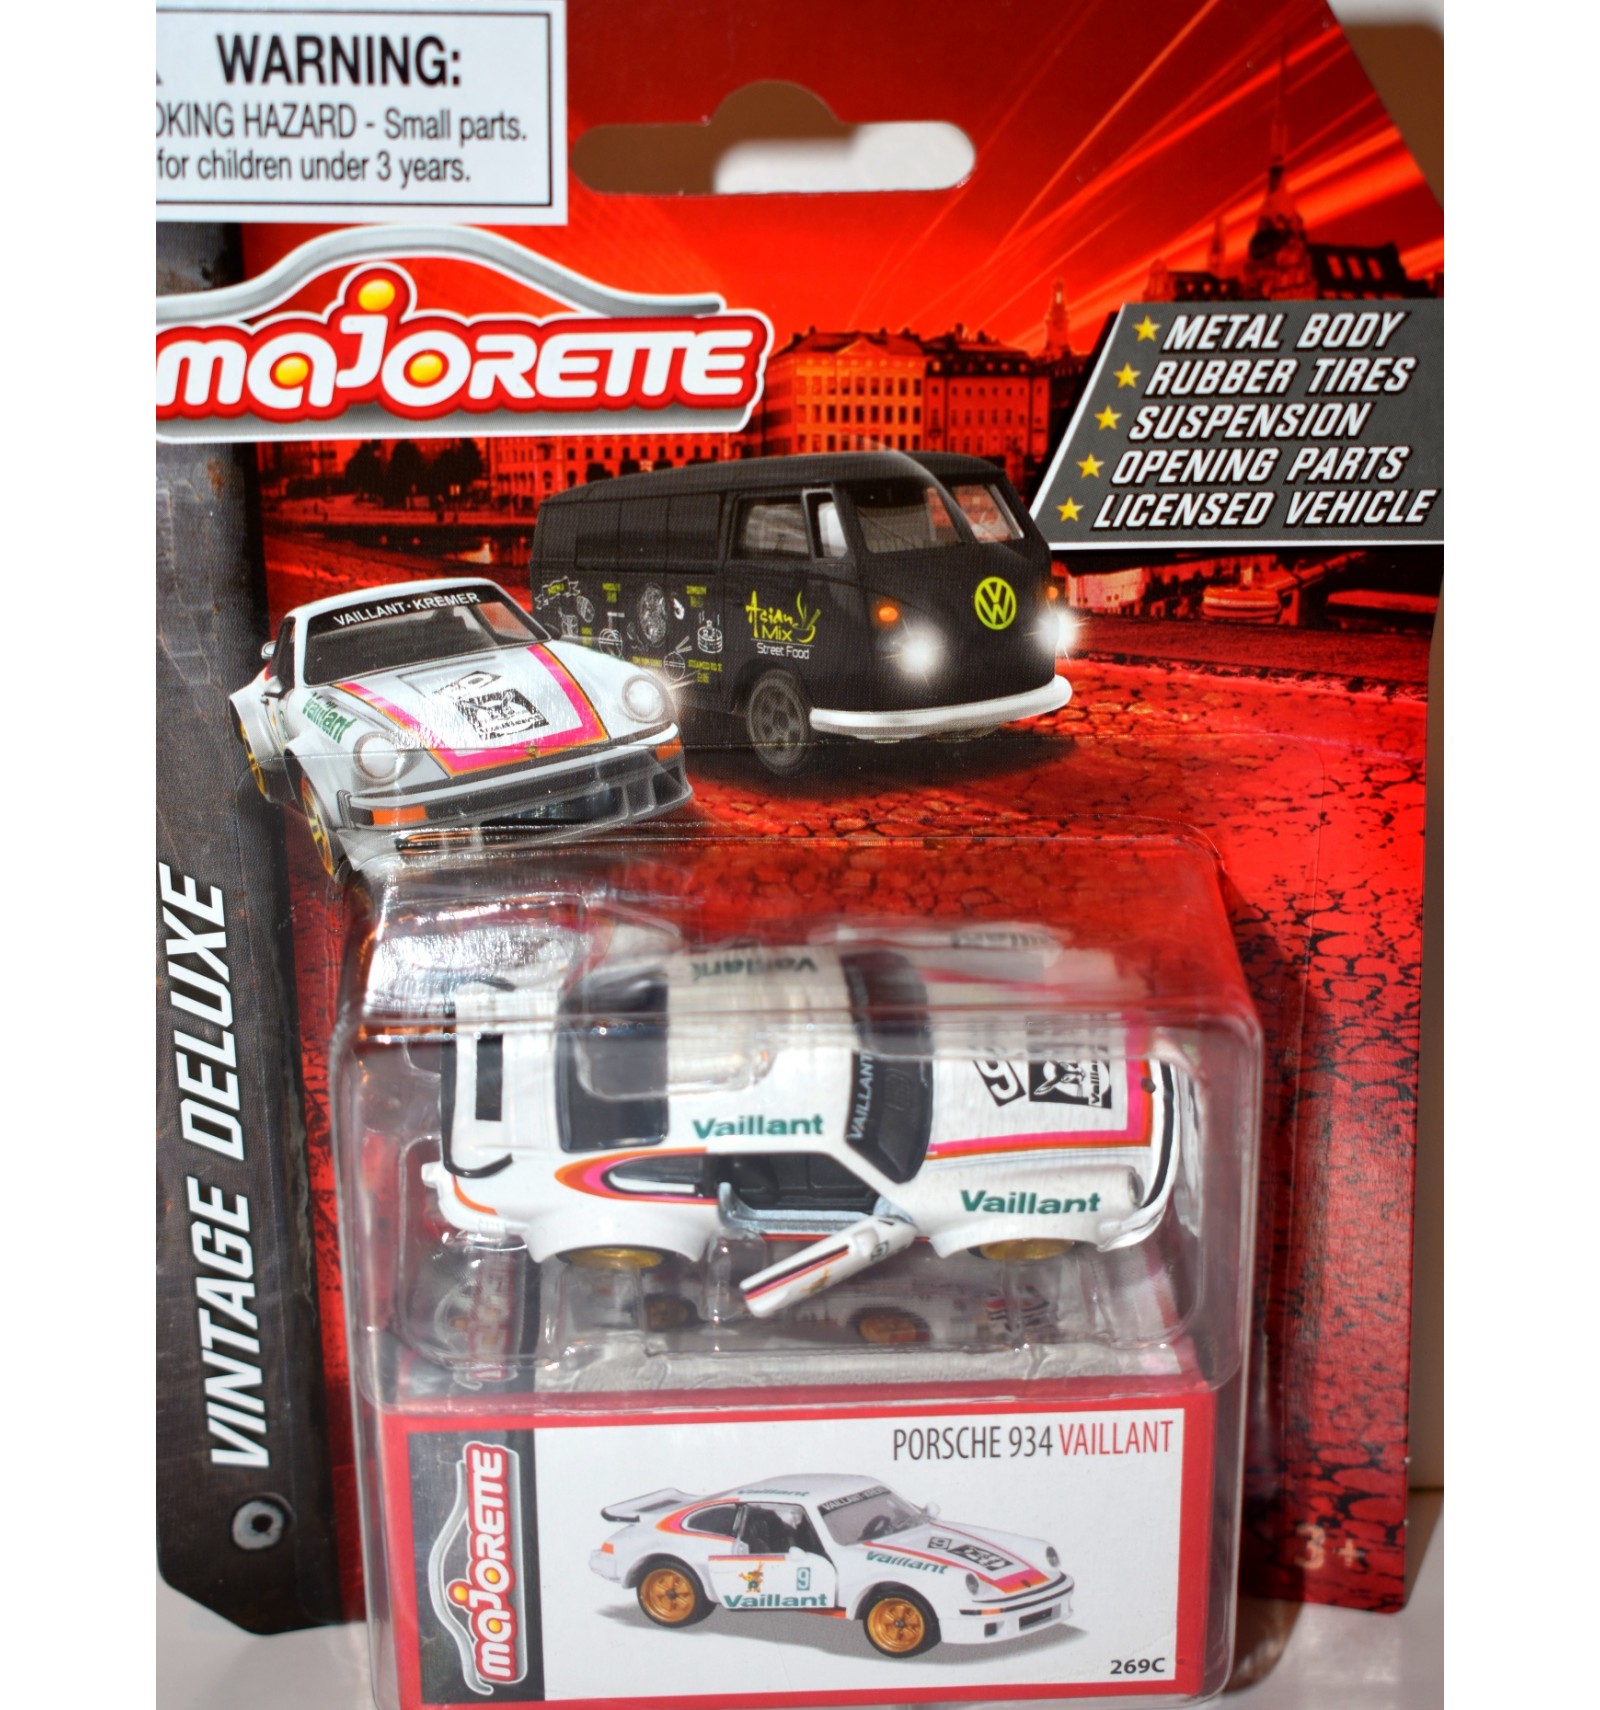 Majorette - Porsche Gift Set (5 Toy Cars) - 5 Car Models (3 each